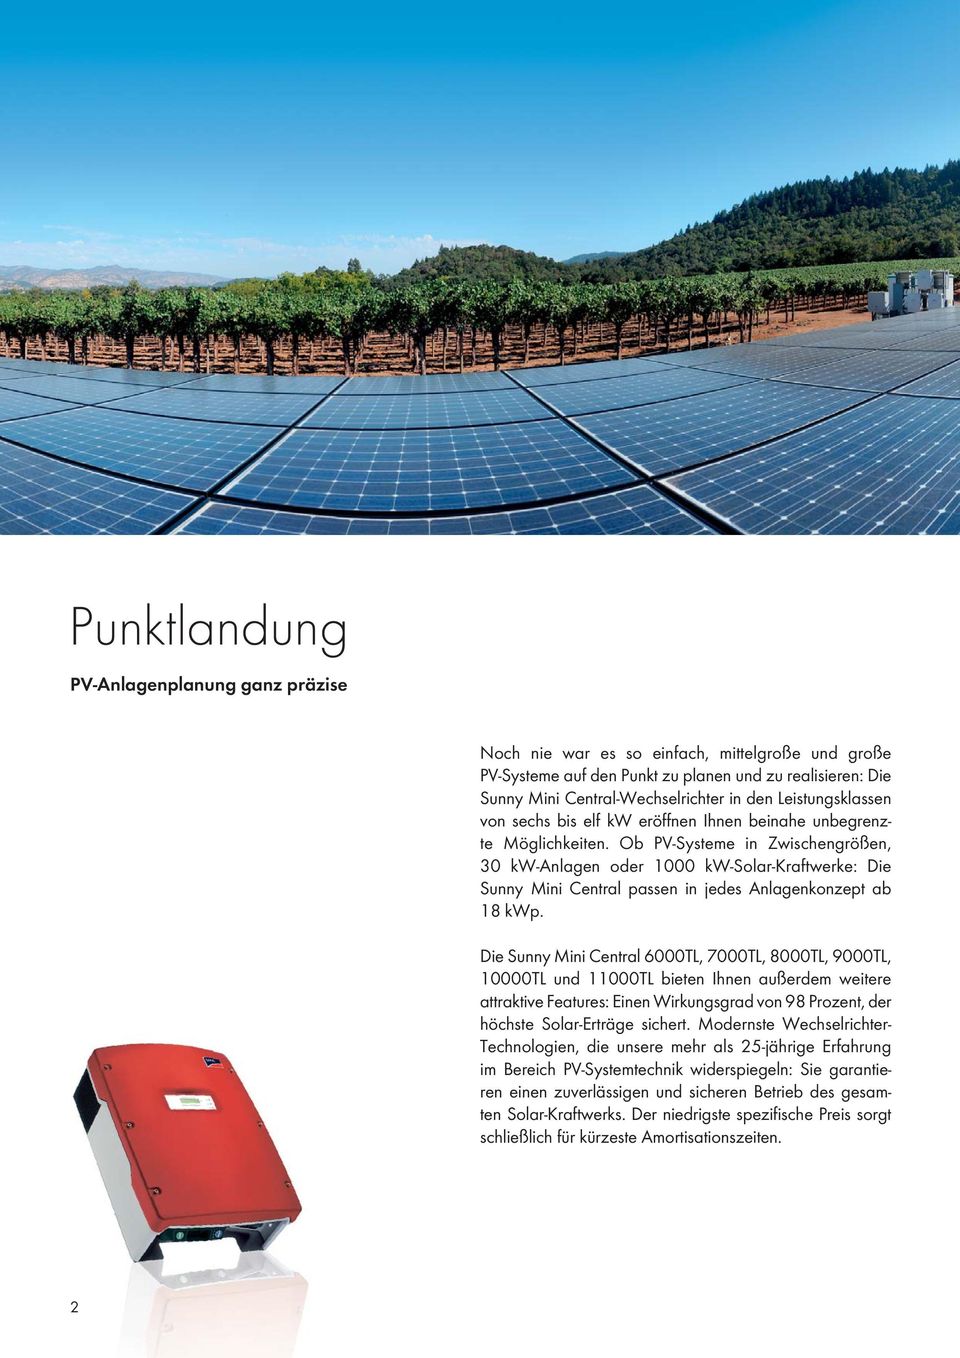 Ob PV-Systeme in Zwischengrößen, 30 kw-anlagen oder 1000 kw-solar-kraftwerke: Die Sunny Mini Central passen in jedes Anlagenkonzept ab 18 kwp.